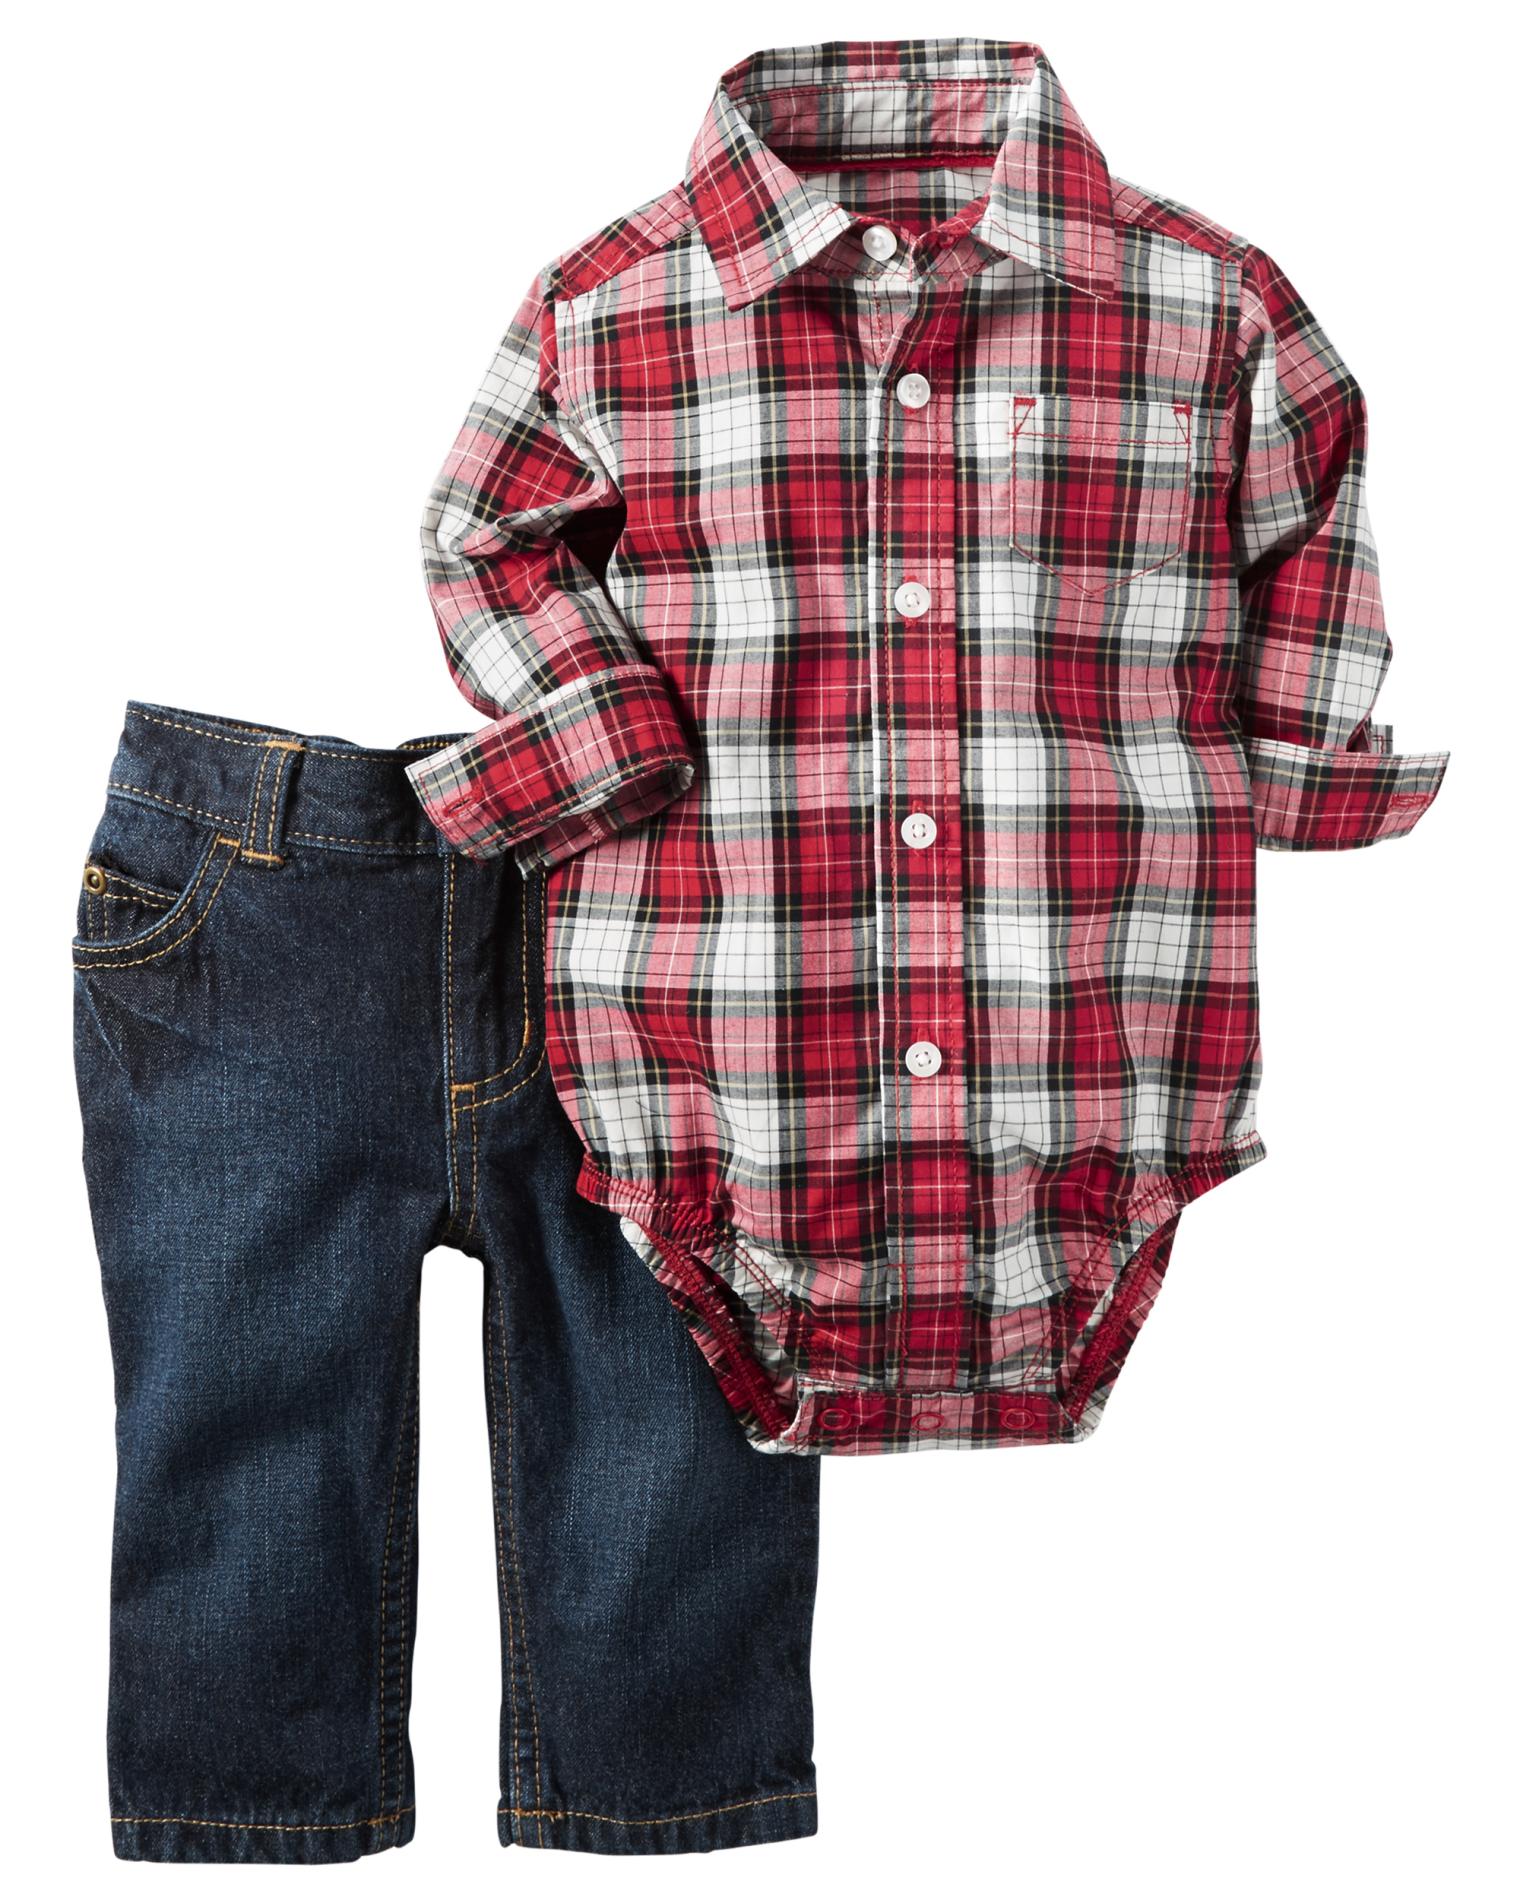 Carter's Newborn & Infant Boys' Button-Front Bodysuit & Jeans - Plaid